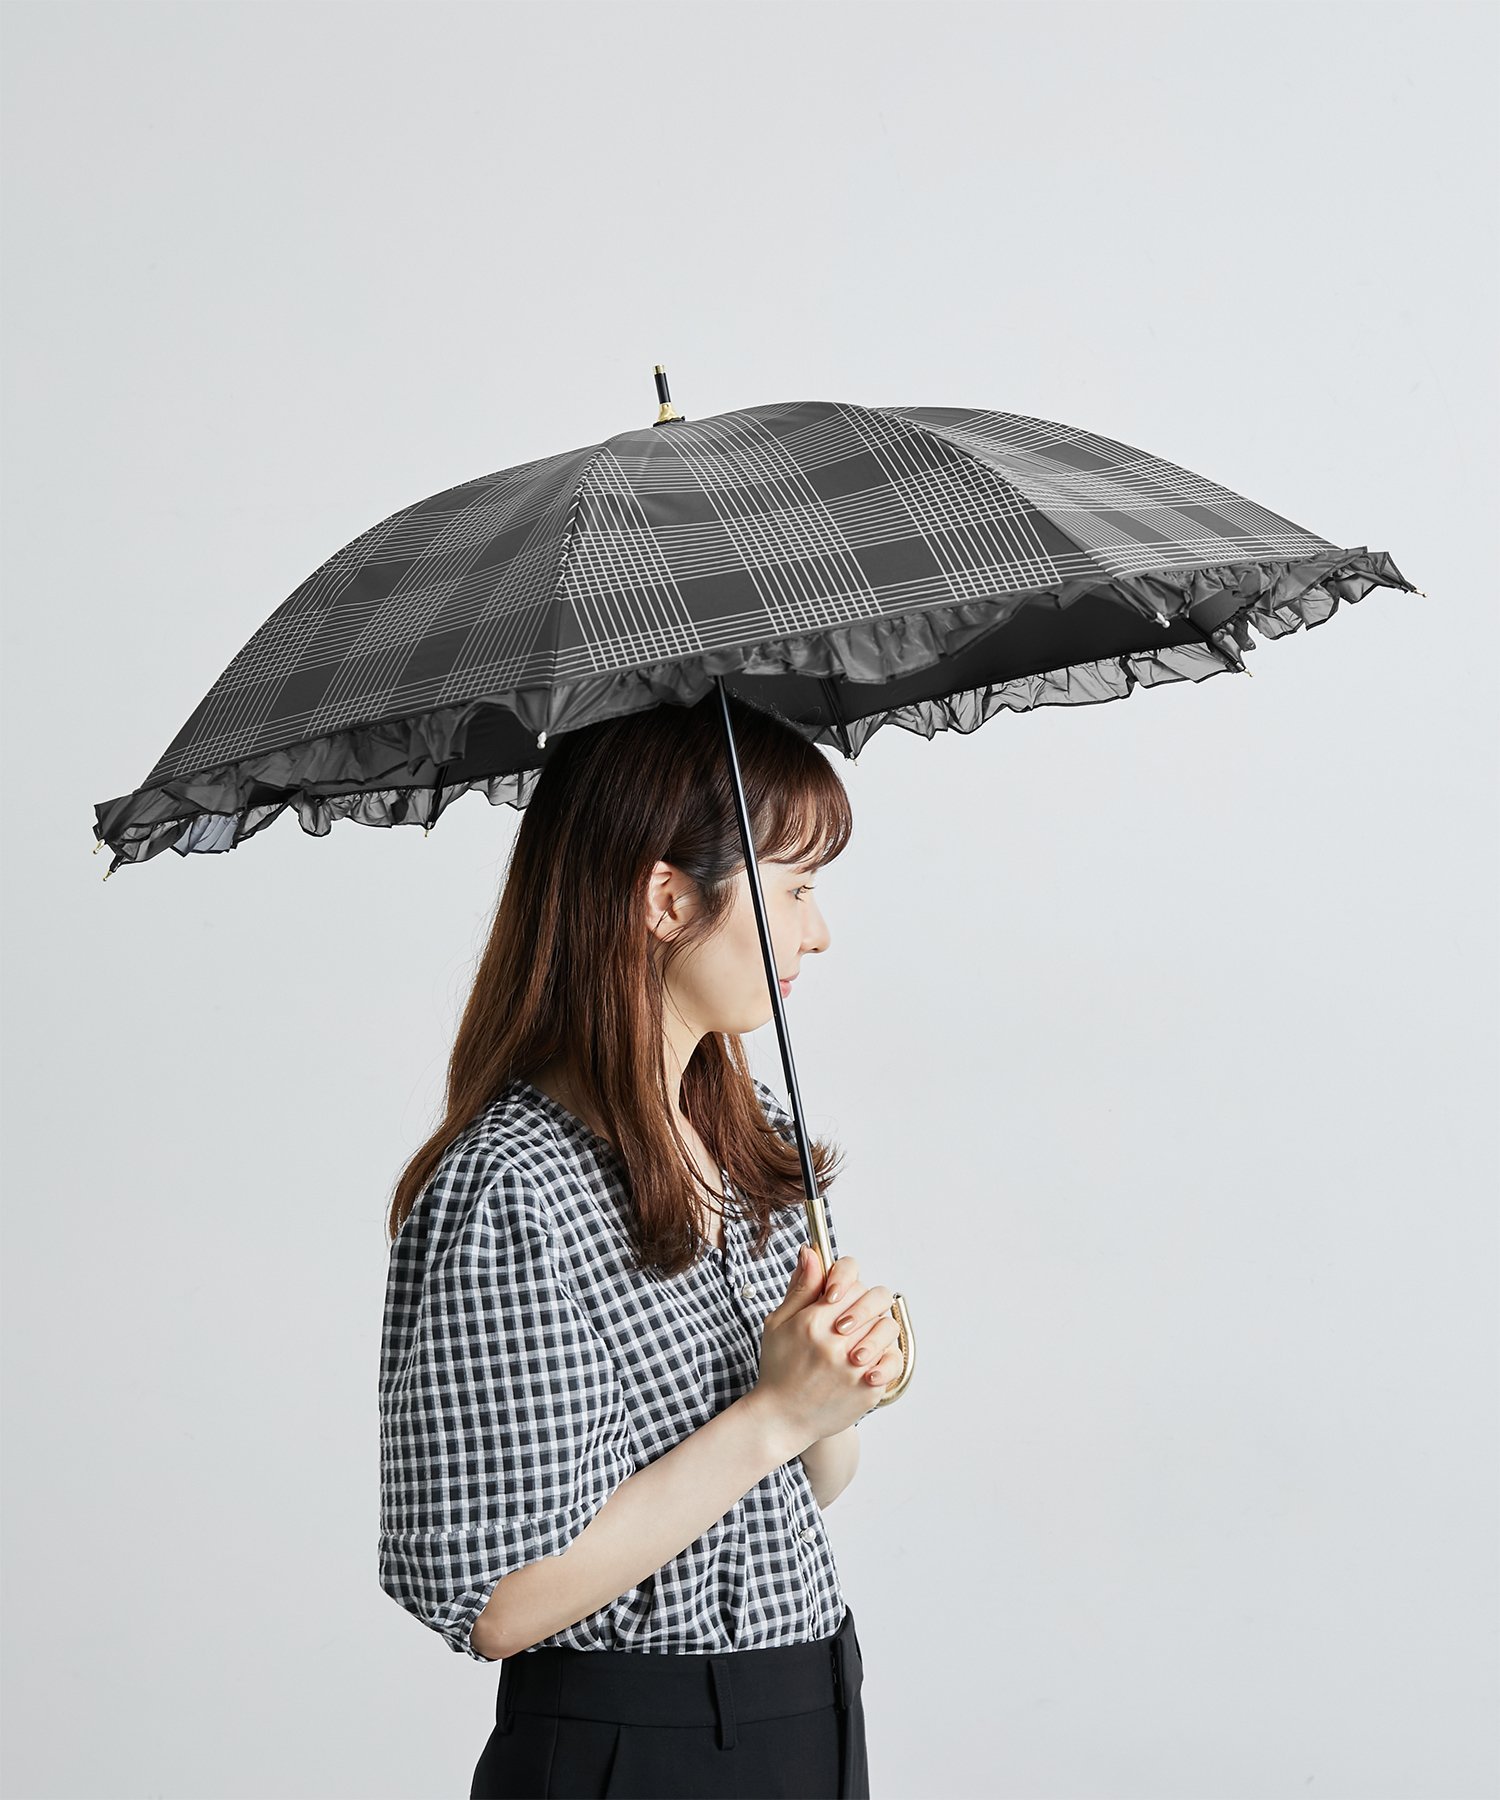 ROPE' PICNIC（ロペピクニック）【Wpc.】晴雨兼用/遮光オーガンジーフリルチェックパラソル細身の手元が美しい。クラシカルなムードを纏った長傘。【デザイン・シルエット】・ノスタルジックなチェック柄のロングアンブレラ。・縁取りのフリルがフェミニンな逸品。・遮光、UVカット機能ありの晴雨兼用。・同シリーズで折り畳みタイプ(品番:GII13190)も展開。【カラー】・ブラック、ホワイト、ベージュの3色展開。・生地裏面カラーは表面と同系色。-----------------------------メーカー品番:81-13223-101完全遮光:100％UVカット率:100％UPF50＋手開き式-----------------------------※撮影時の光、お使いのモニター環境によって色の見え方が違う場合がございます。※UVカット、遮光、遮熱効果を主な目的としておりますが、はっ水加工を施しており雨傘としても使用可能。※記載の紫外線遮蔽（UVカット）率・遮光率は生地の状態での測定値です。製品の刺繍・縫製などUV加工生地以外の部分はその限りではありません。型番：GII13160-01-099 HT5763【採寸】F／全長67.5 ｜ 直径87.2 ｜ その他（重量）310g商品のサイズについて【商品詳細】ブラック（01）：中国｜ホワイト（10）：中国｜ベージュ（27）：中国素材：ブラック（01）：ポリエステル100％（PUコーティング）/切り継ぎ生地:ナイロン100％｜ホワイト（10）：ポリエステル100％（PUコーティング）/切り継ぎ生地:ナイロン100％｜ベージュ（27）：ポリエステル100％（PUコーティング）/切り継ぎ生地:ナイロン100％サイズ：F※画面上と実物では多少色具合が異なって見える場合もございます。ご了承ください。商品のカラーについて 【予約商品について】 ※「先行予約販売中」「予約販売中」をご注文の際は予約商品についてをご確認ください。■重要なお知らせ※ 当店では、ギフト配送サービス及びラッピングサービスを行っておりません。ご注文者様とお届け先が違う場合でも、タグ（値札）付「納品書 兼 返品連絡票」同梱の状態でお送り致しますのでご了承ください。 ラッピング・ギフト配送について※ 2点以上ご購入の場合、全ての商品が揃い次第一括でのお届けとなります。お届け予定日の異なる商品をお買い上げの場合はご注意下さい。お急ぎの商品がございましたら分けてご購入いただきますようお願い致します。発送について ※ 買い物カートに入れるだけでは在庫確保されませんのでお早めに購入手続きをしてください。当店では在庫を複数サイトで共有しているため、同時にご注文があった場合、売切れとなってしまう事がございます。お手数ですが、ご注文後に当店からお送りする「ご注文内容の確認メール」をご確認ください。ご注文の確定について ※ Rakuten Fashionの商品ページに記載しているメーカー希望小売価格は、楽天市場「商品価格ナビ」に登録されている価格に準じています。 商品の価格についてROPE' PICNICROPE' PICNICの傘・長傘ファッション雑貨ご注文・お届けについて発送ガイドラッピンググッズ3,980円以上送料無料ご利用ガイド